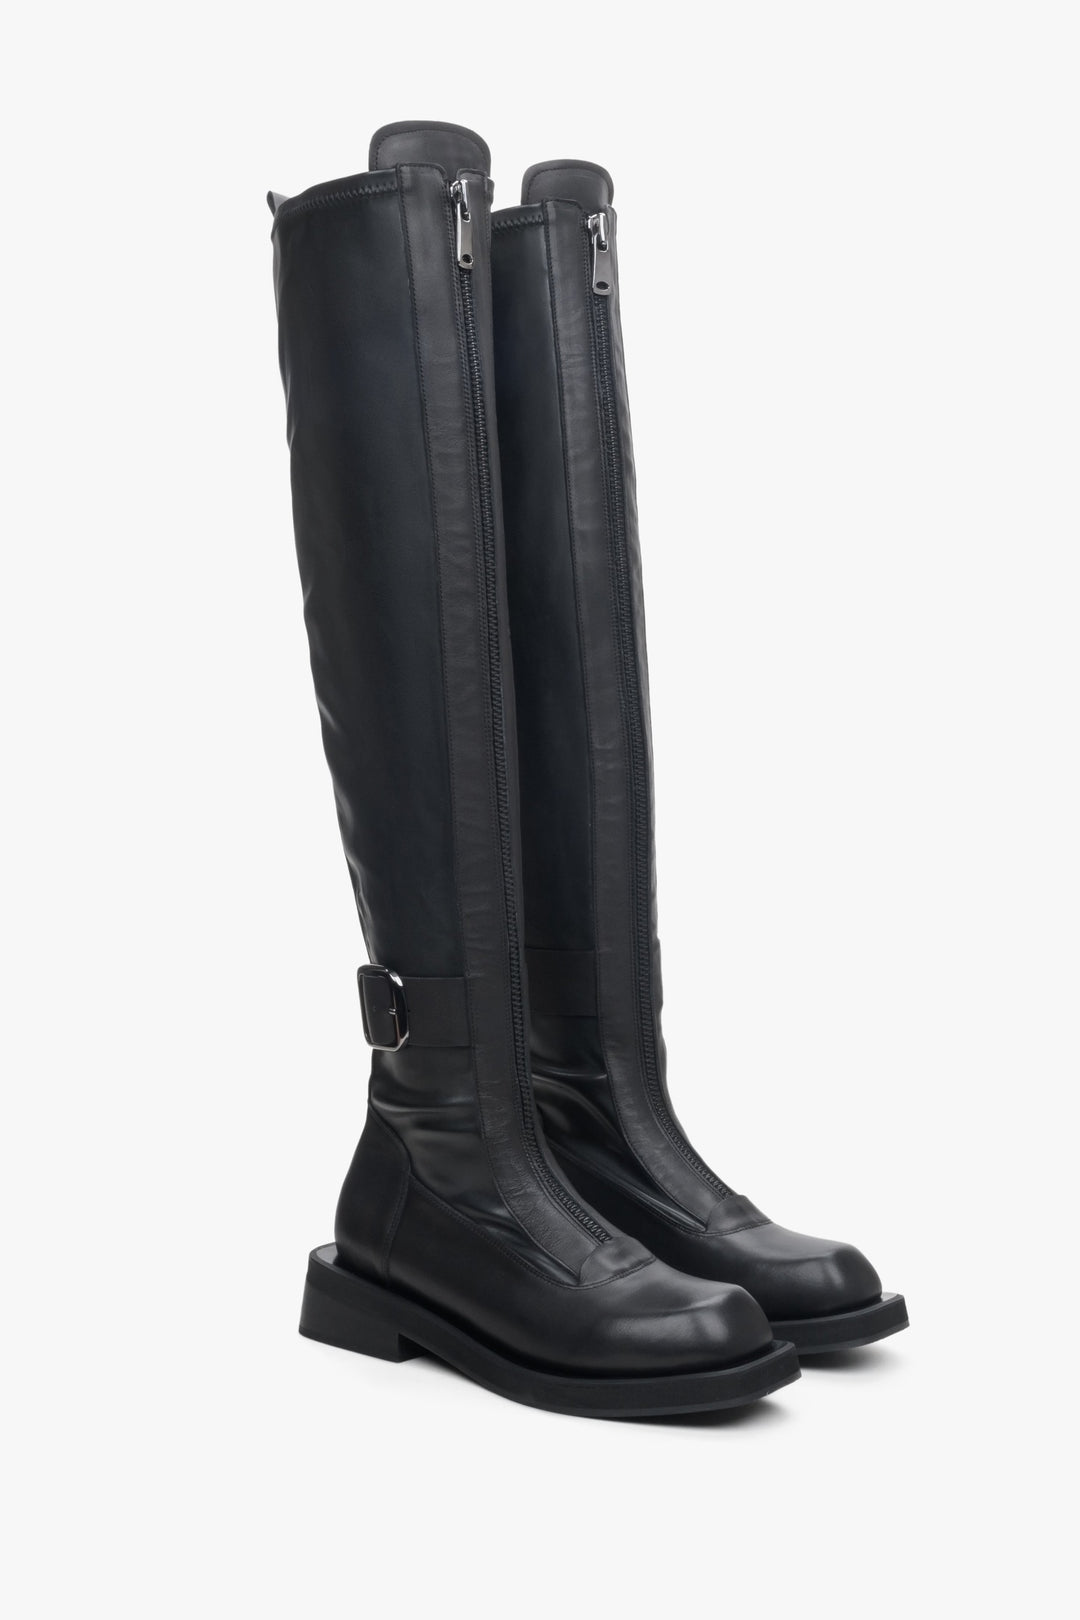 Wysokie, skórzane kozaki damskie Estro w kolorze czarnym - zbliżenie na czubek i linię boczną butów.